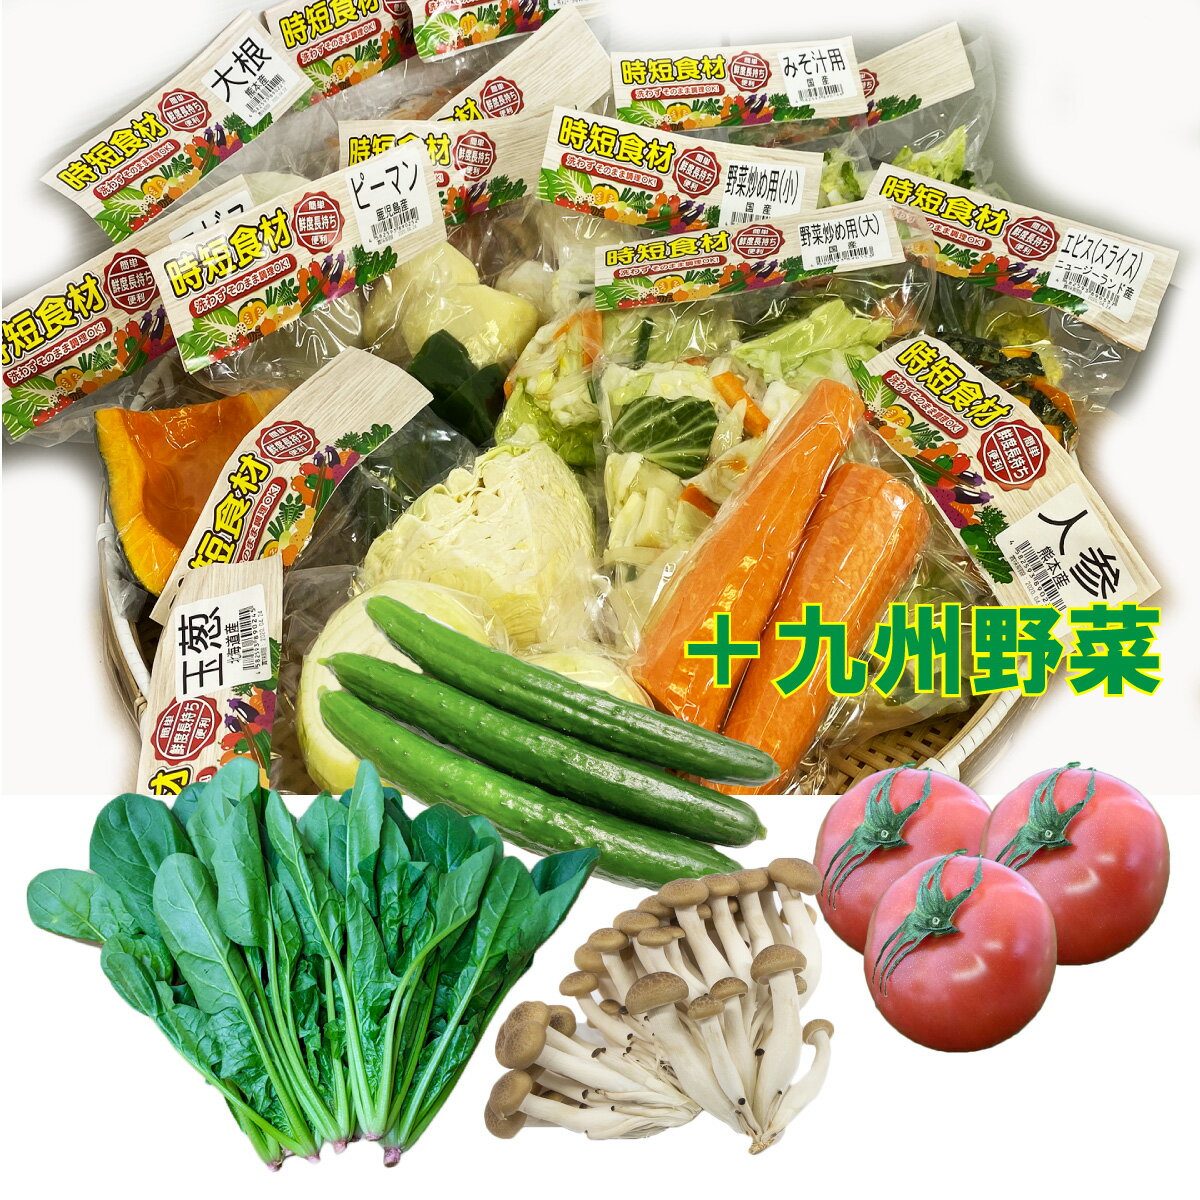 便利野菜【時短食材8品+九州野菜】